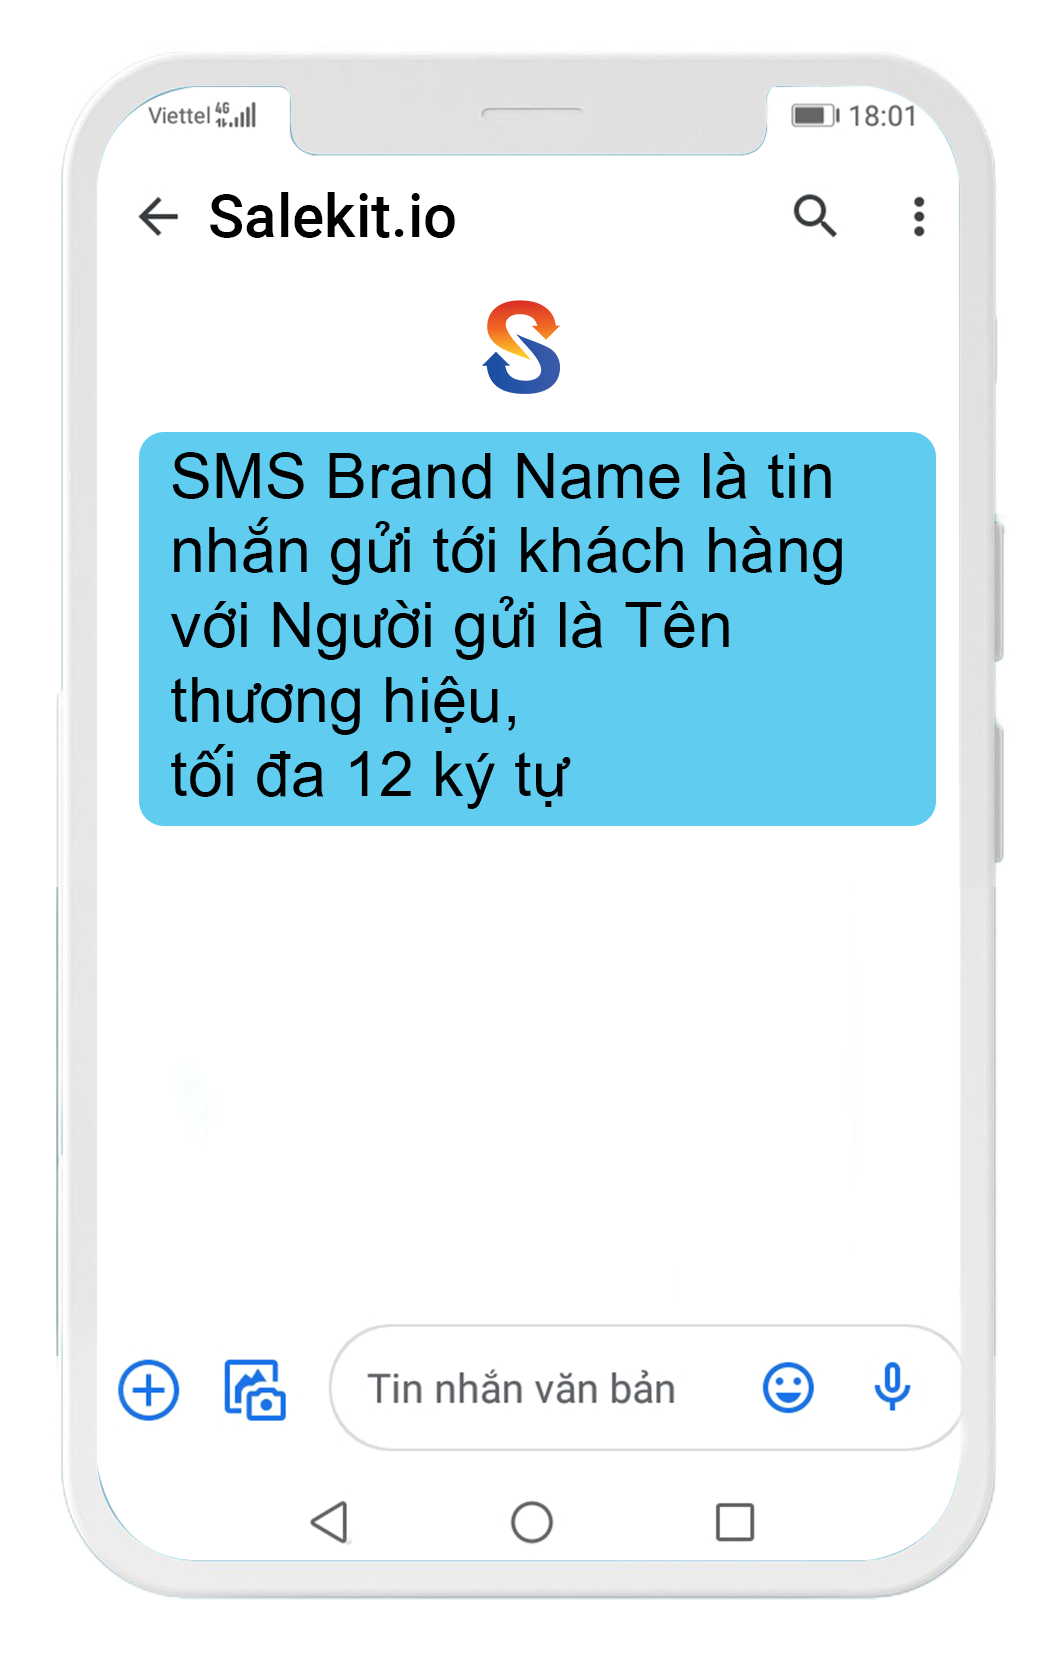 SMS Brand Name